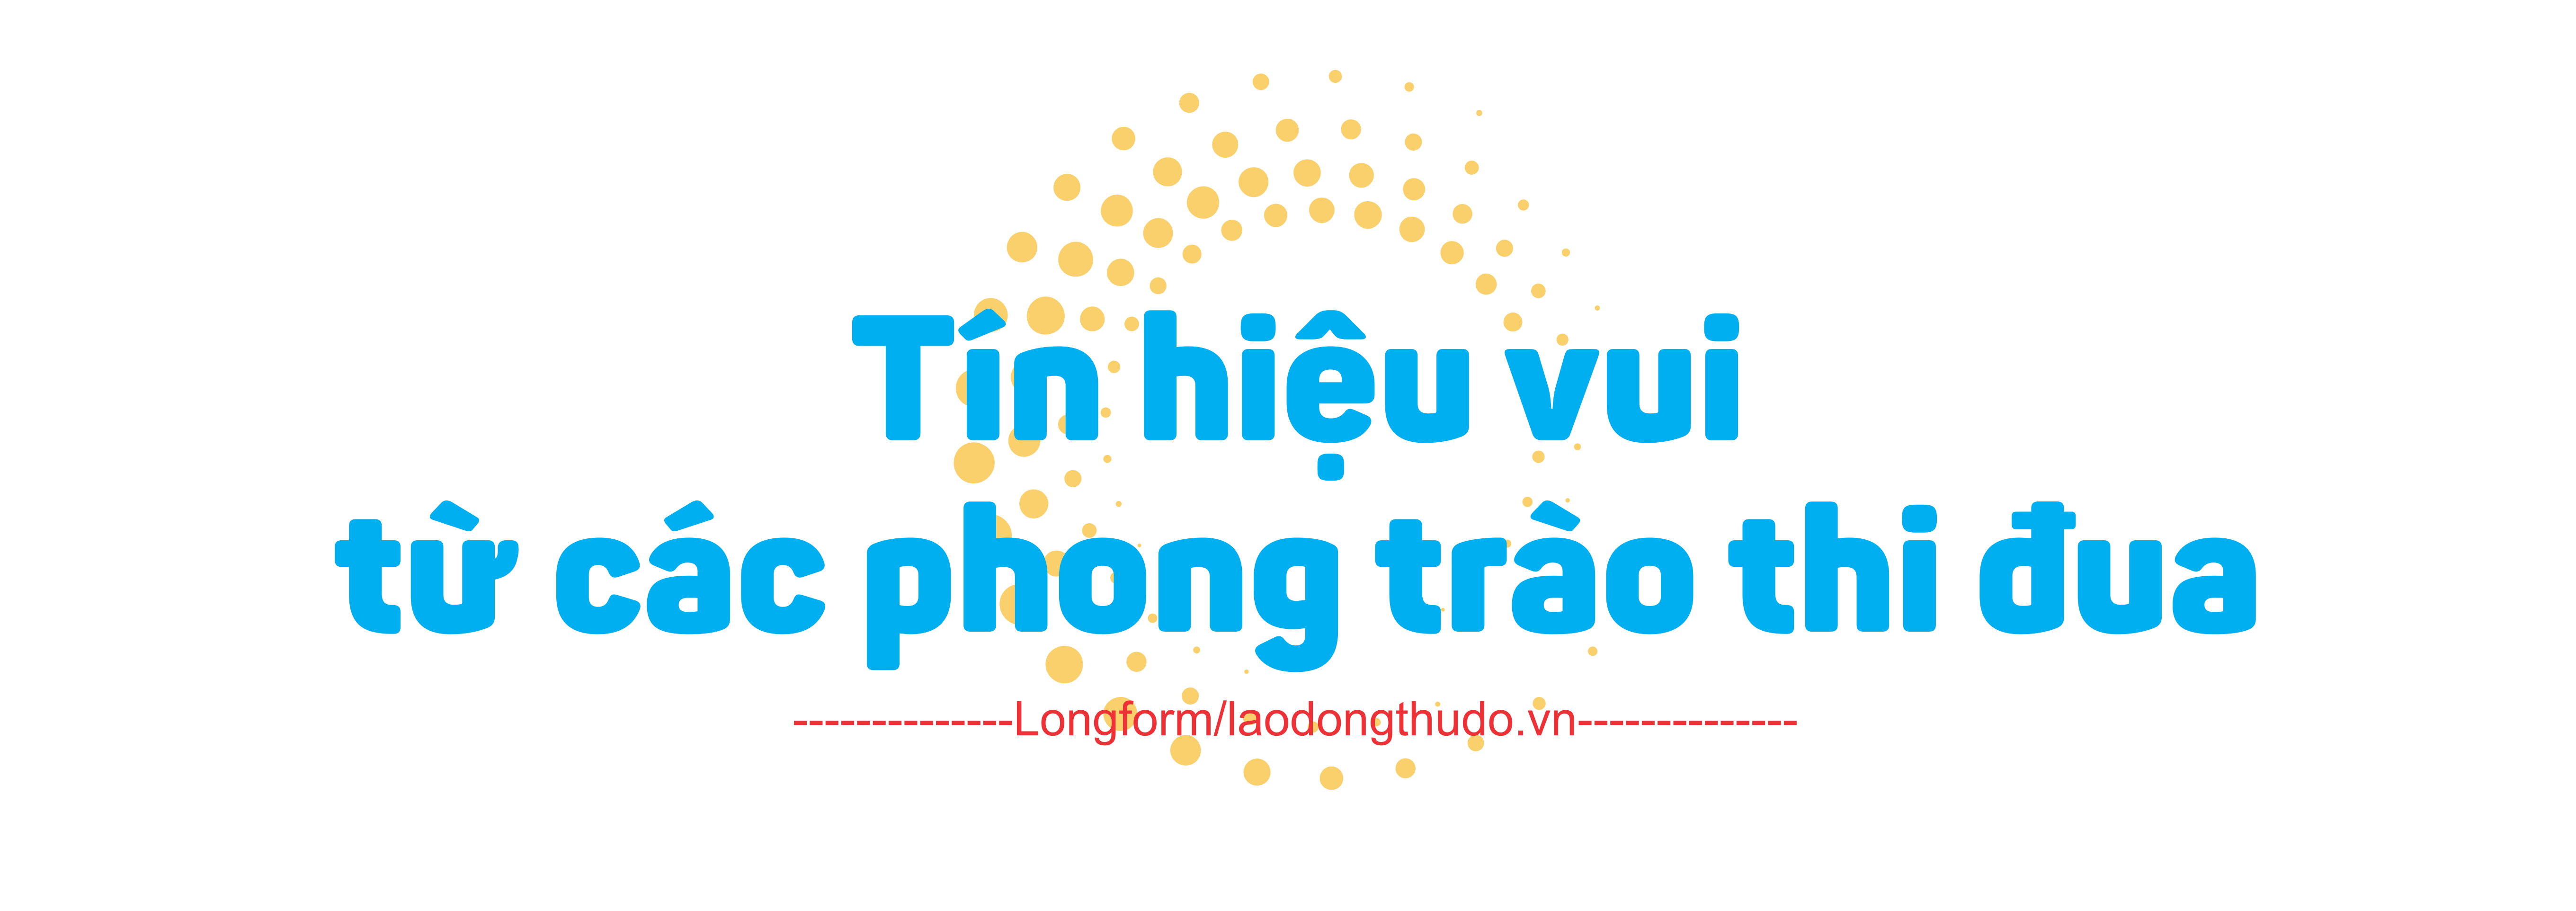 Công đoàn ngành Giáo dục Hà Nội: Lan tỏa các phong trào thi đua trong cán bộ, giáo viên, nhân viên